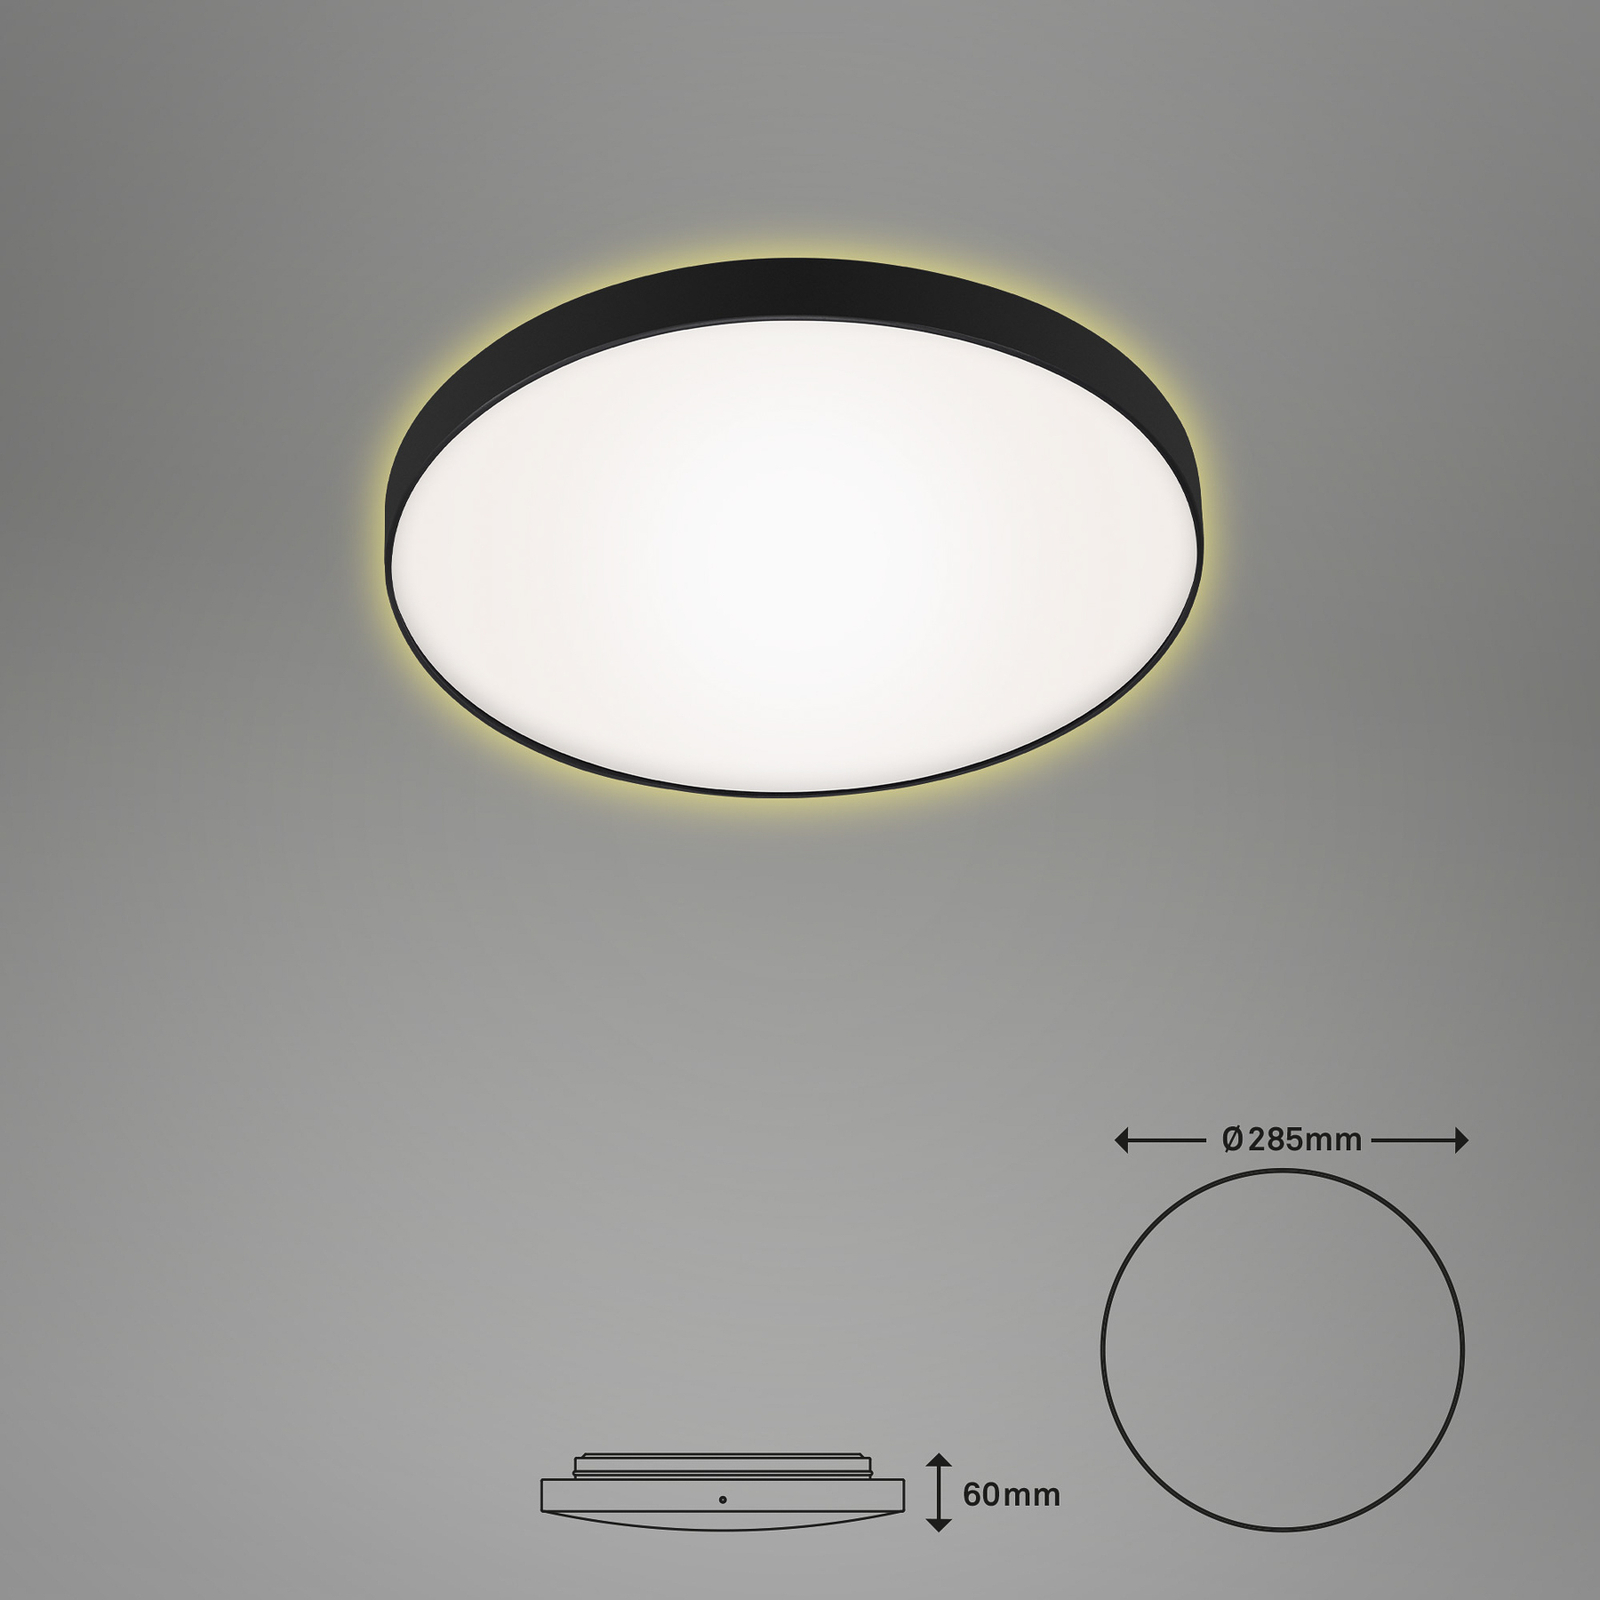 Stropní svítidlo LED Flet s podsvícením, Ø 28,5 cm